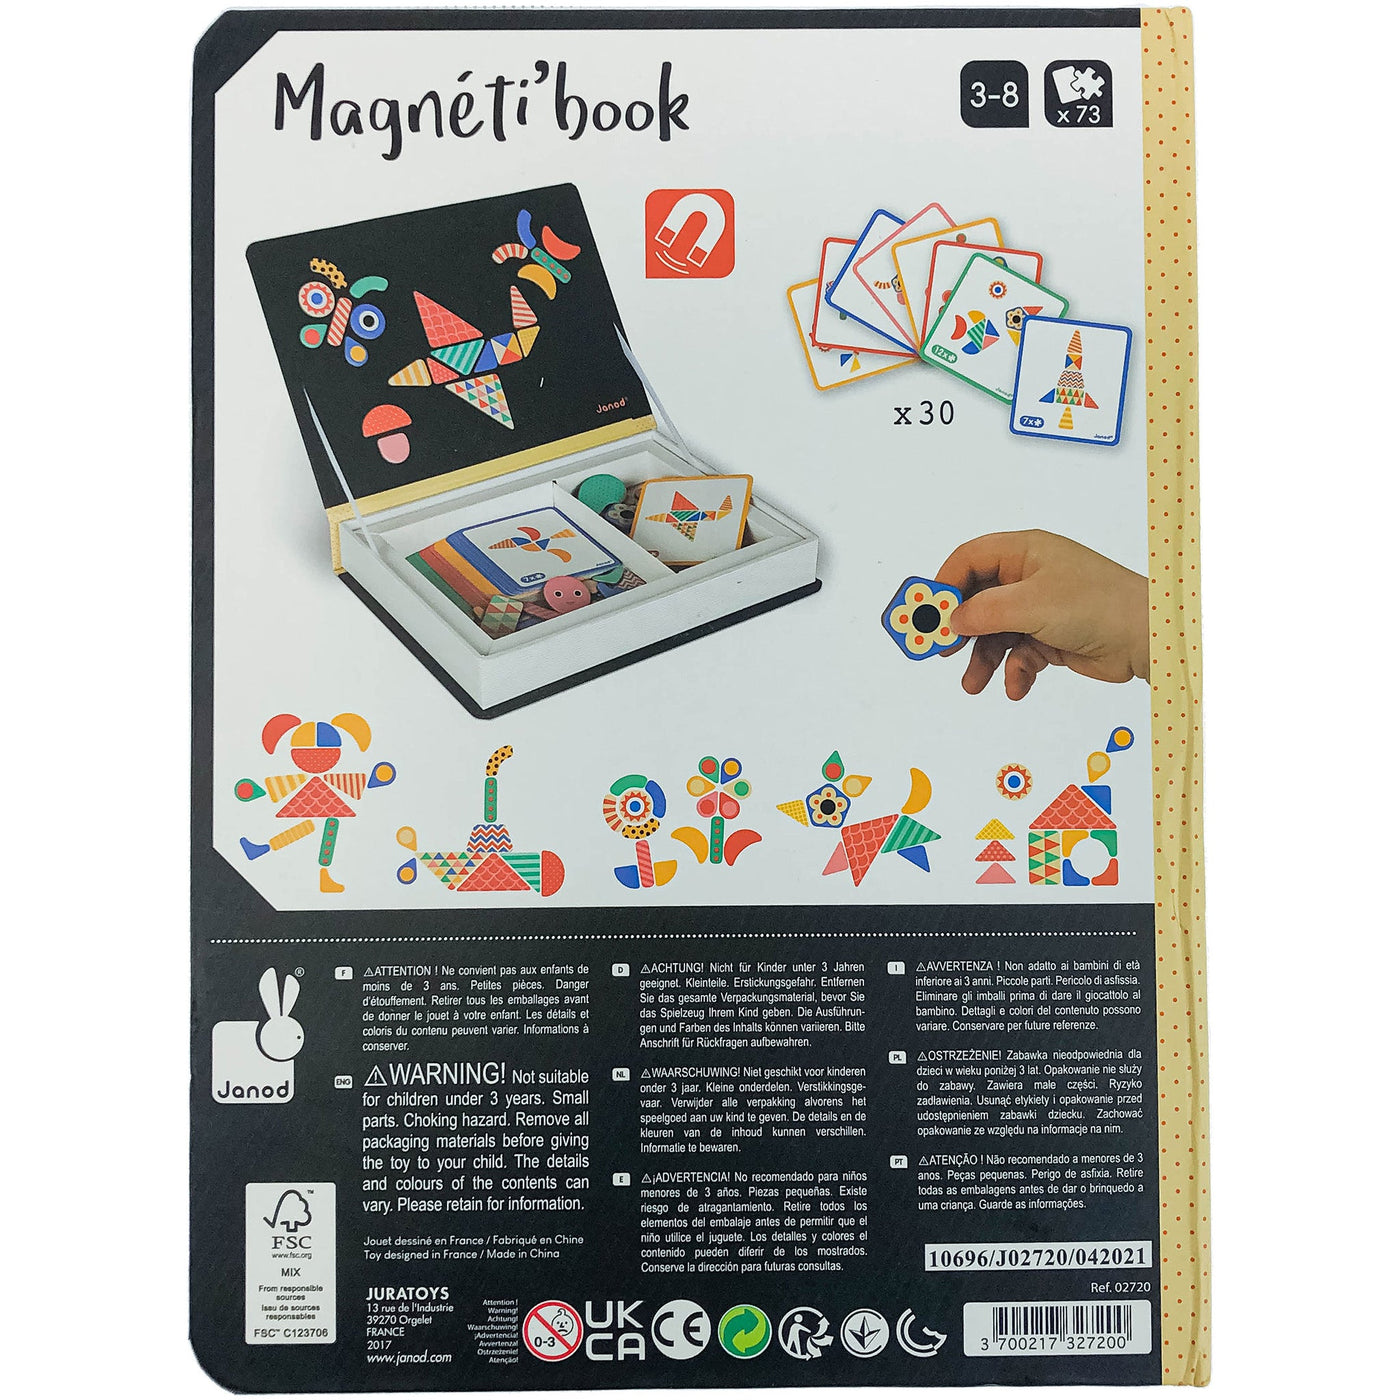 Ardoise et formes magnétiques "Magnéti'book Moduloform" de seconde main pour enfant à partir de 3 ans - photo alternative_2